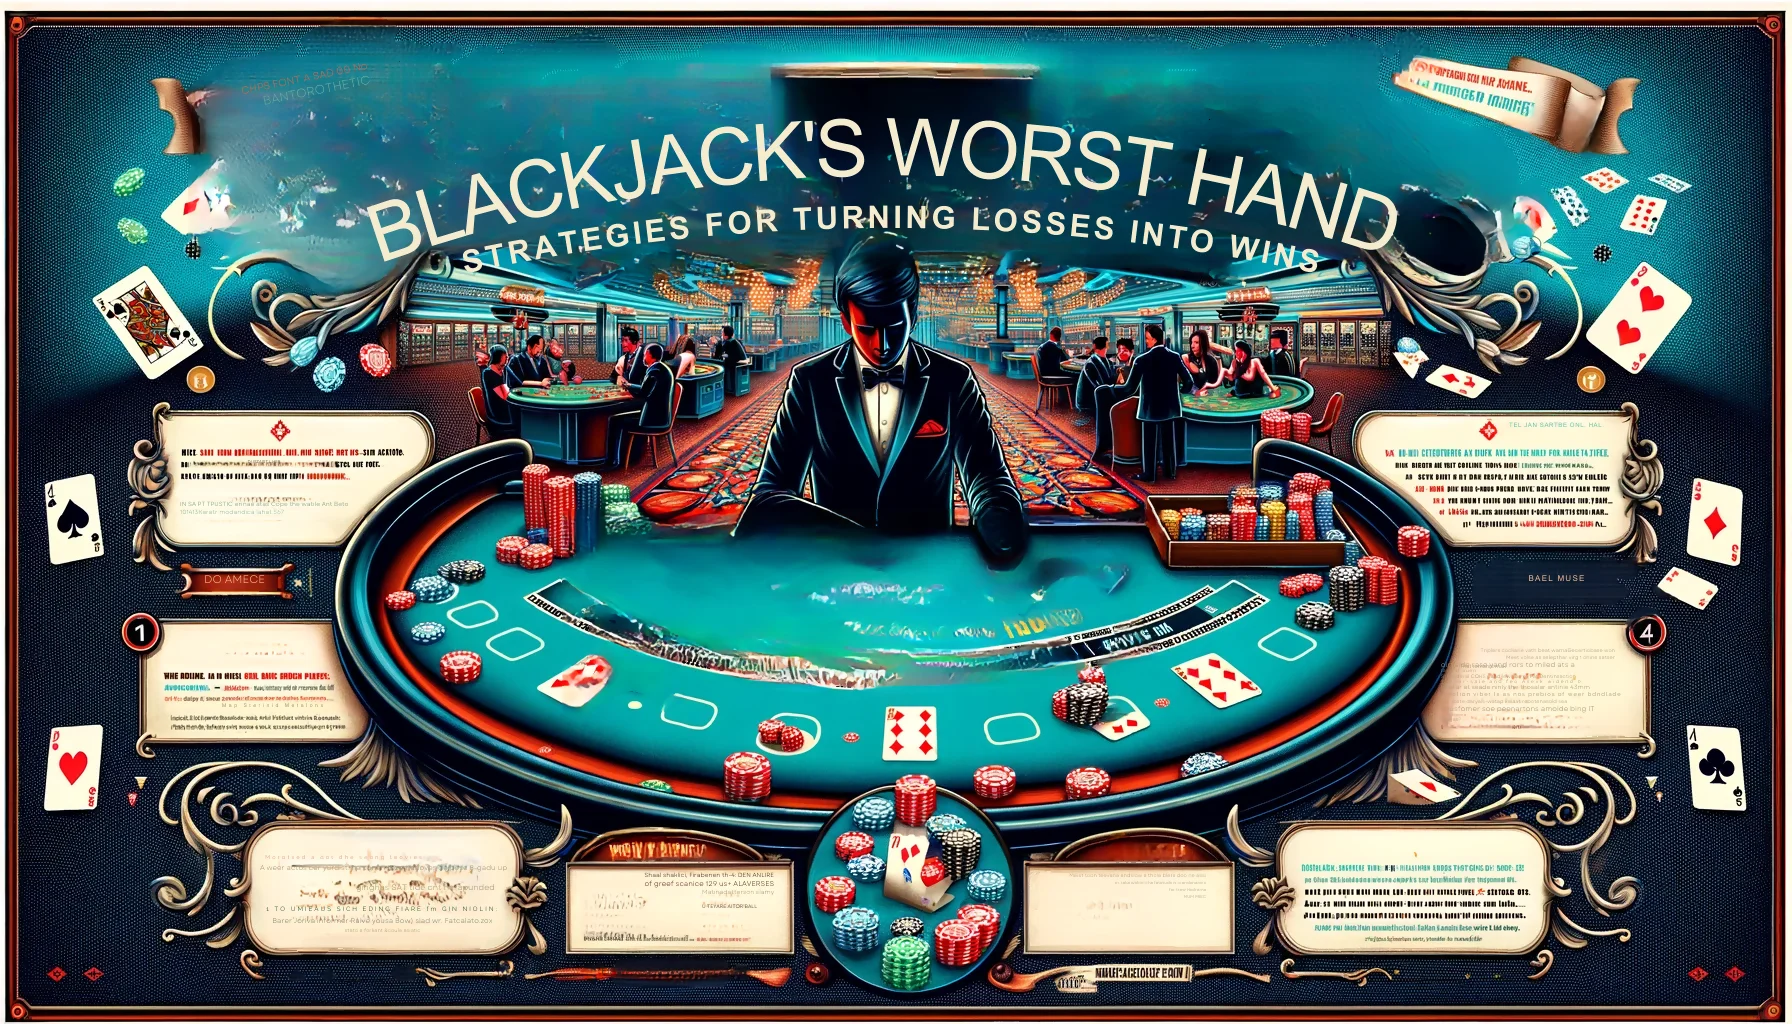 Blackjack's Worst Hands